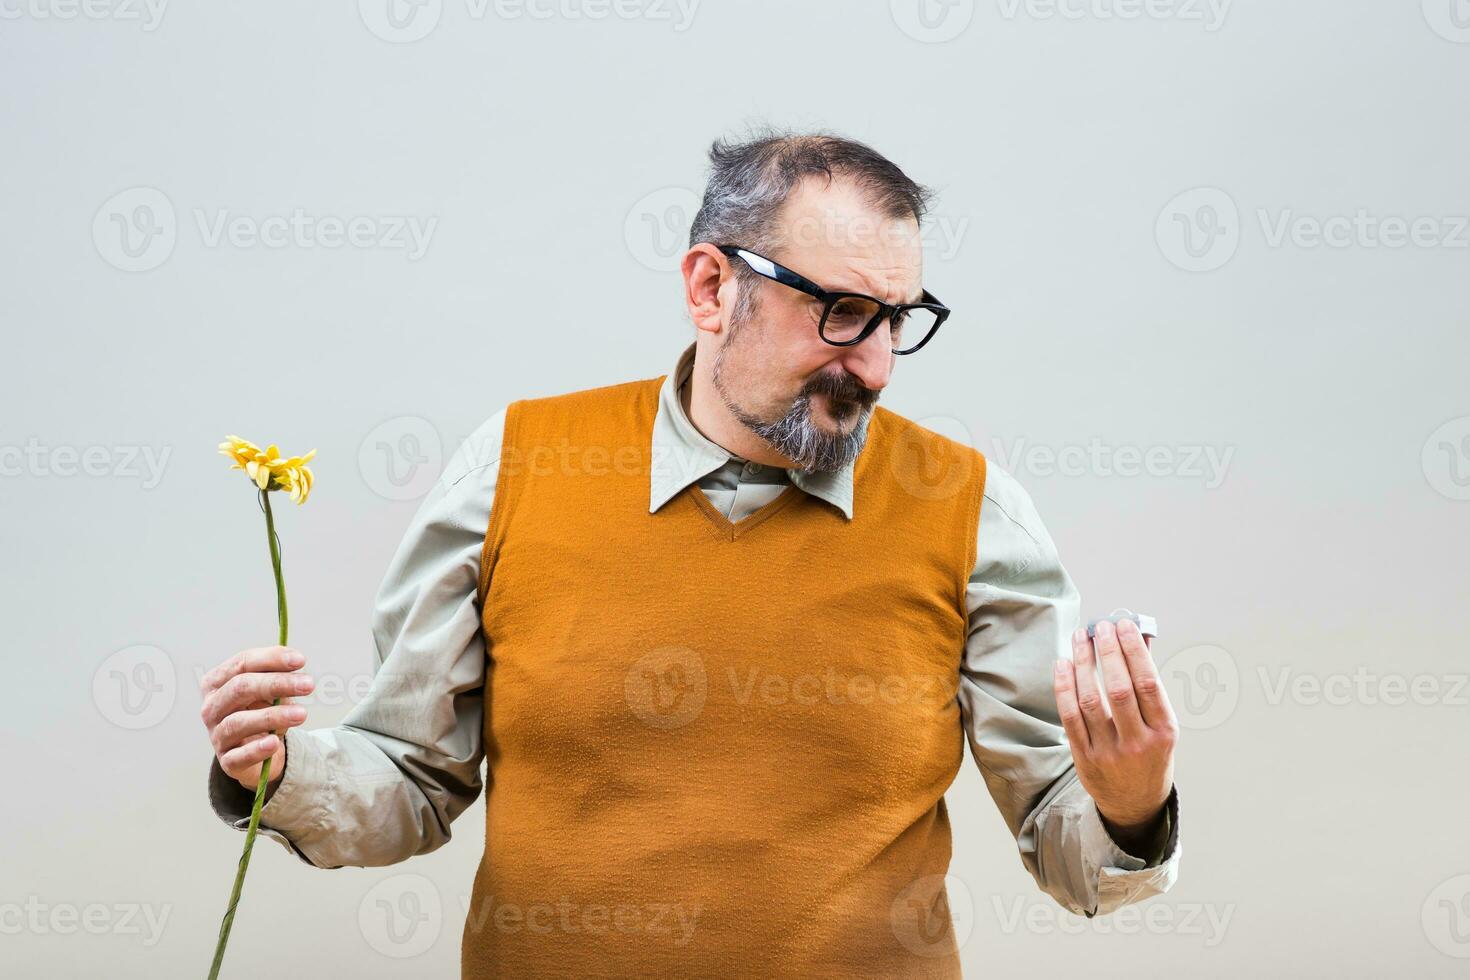 nerd uomo è molto triste perché lui aveva proposta il suo fidanzata ma lei respinto lui foto